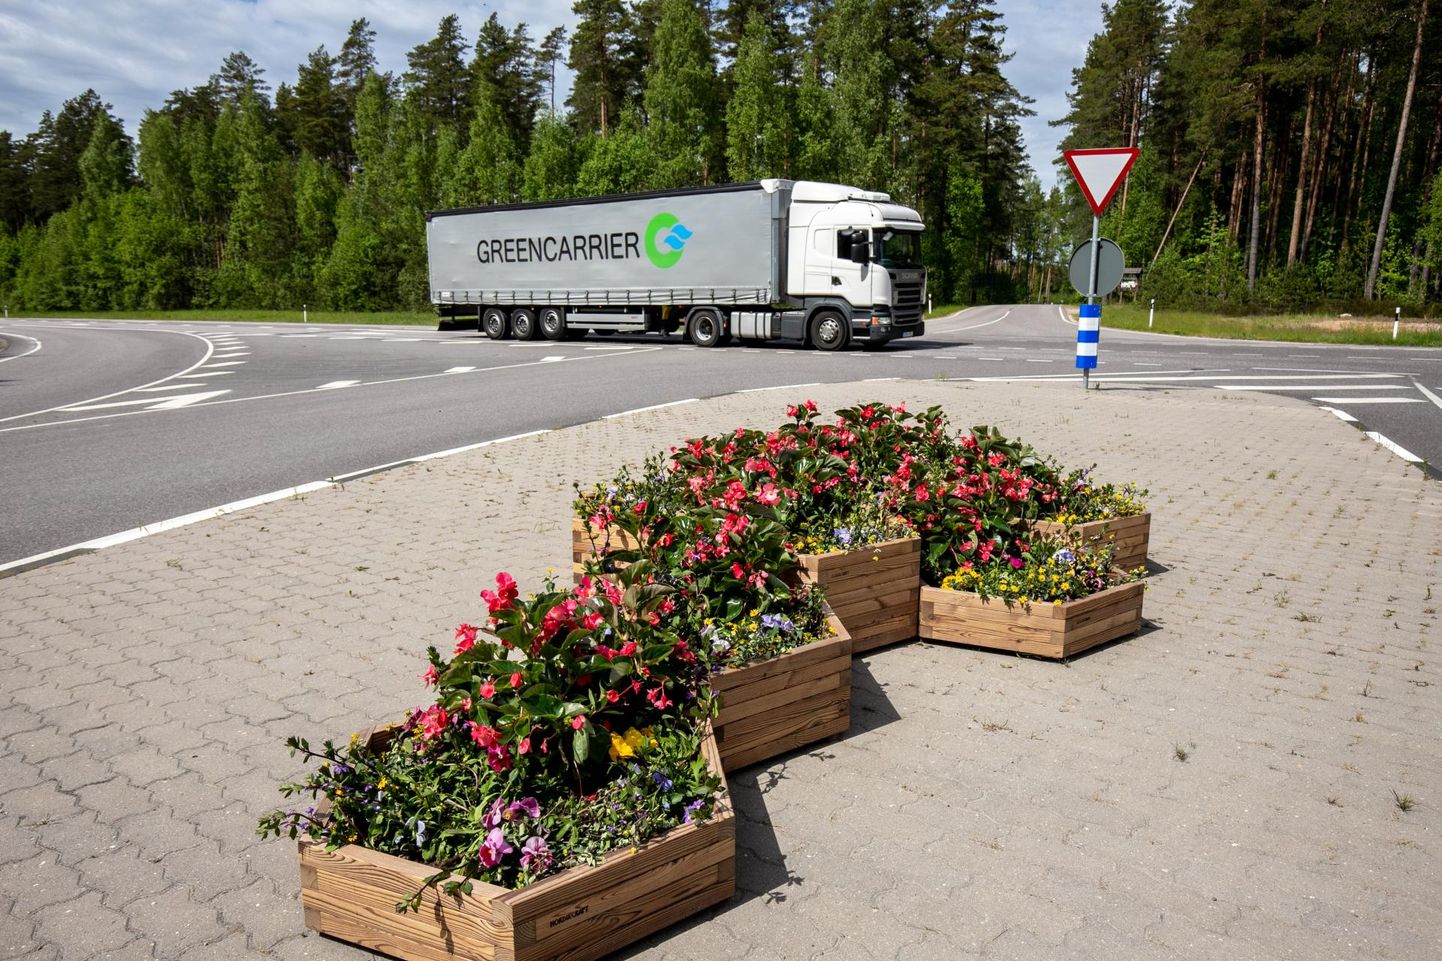 Puidust kärjekujulised lillekastid ilmestavad Valga–Uulu maantee ääres Kilingi-Nõmme sissesõidul ohutussaart.